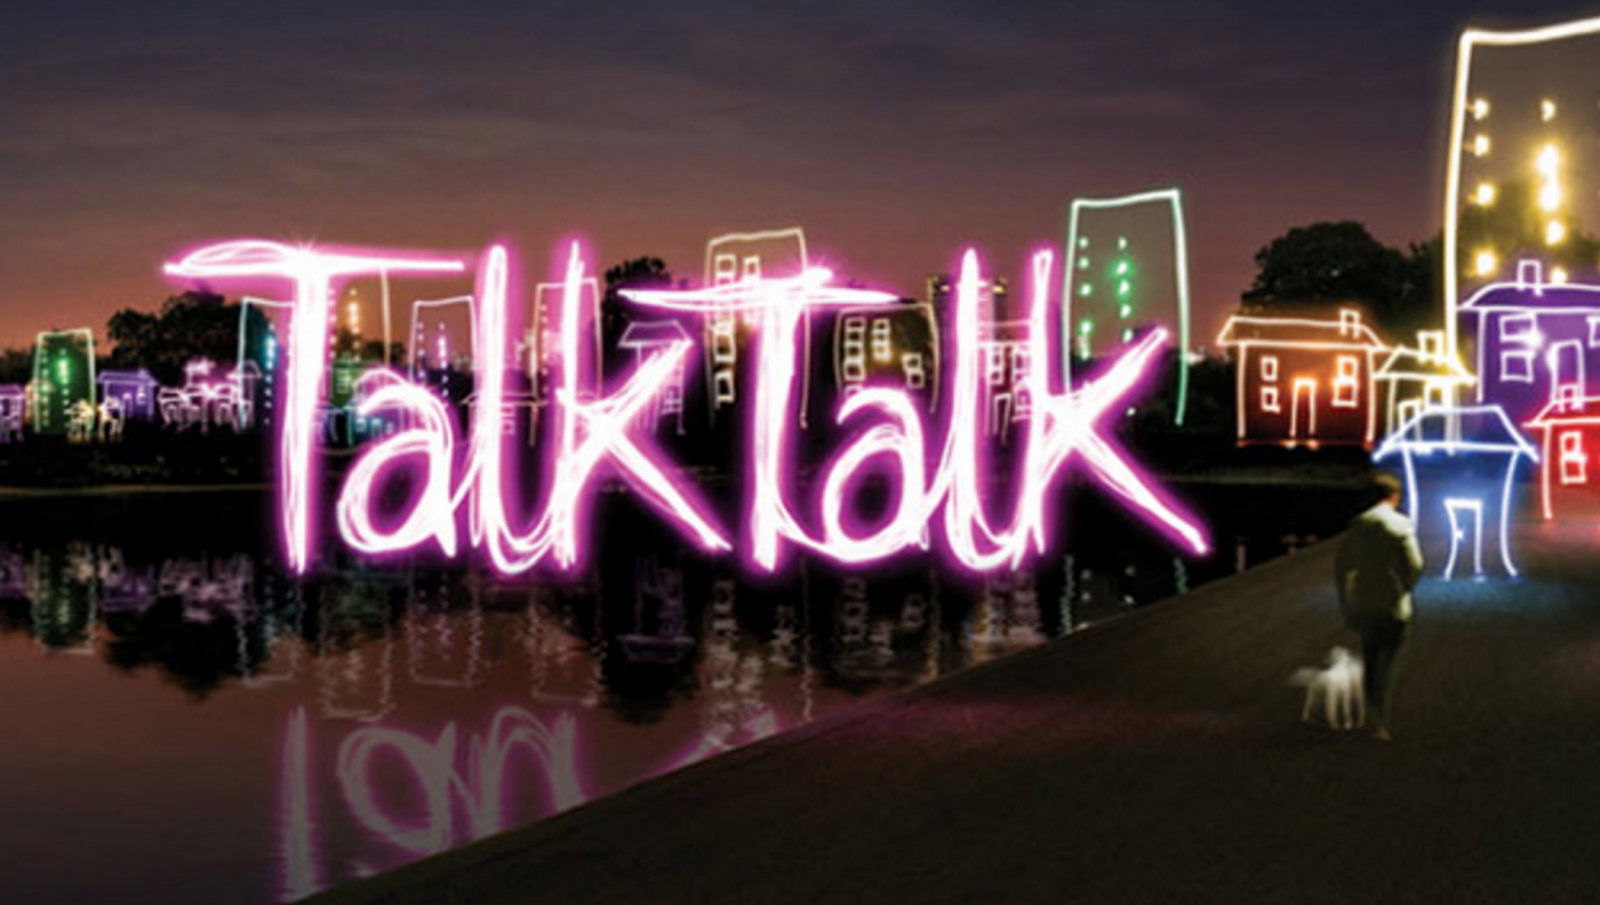 TalkTalk business broadband